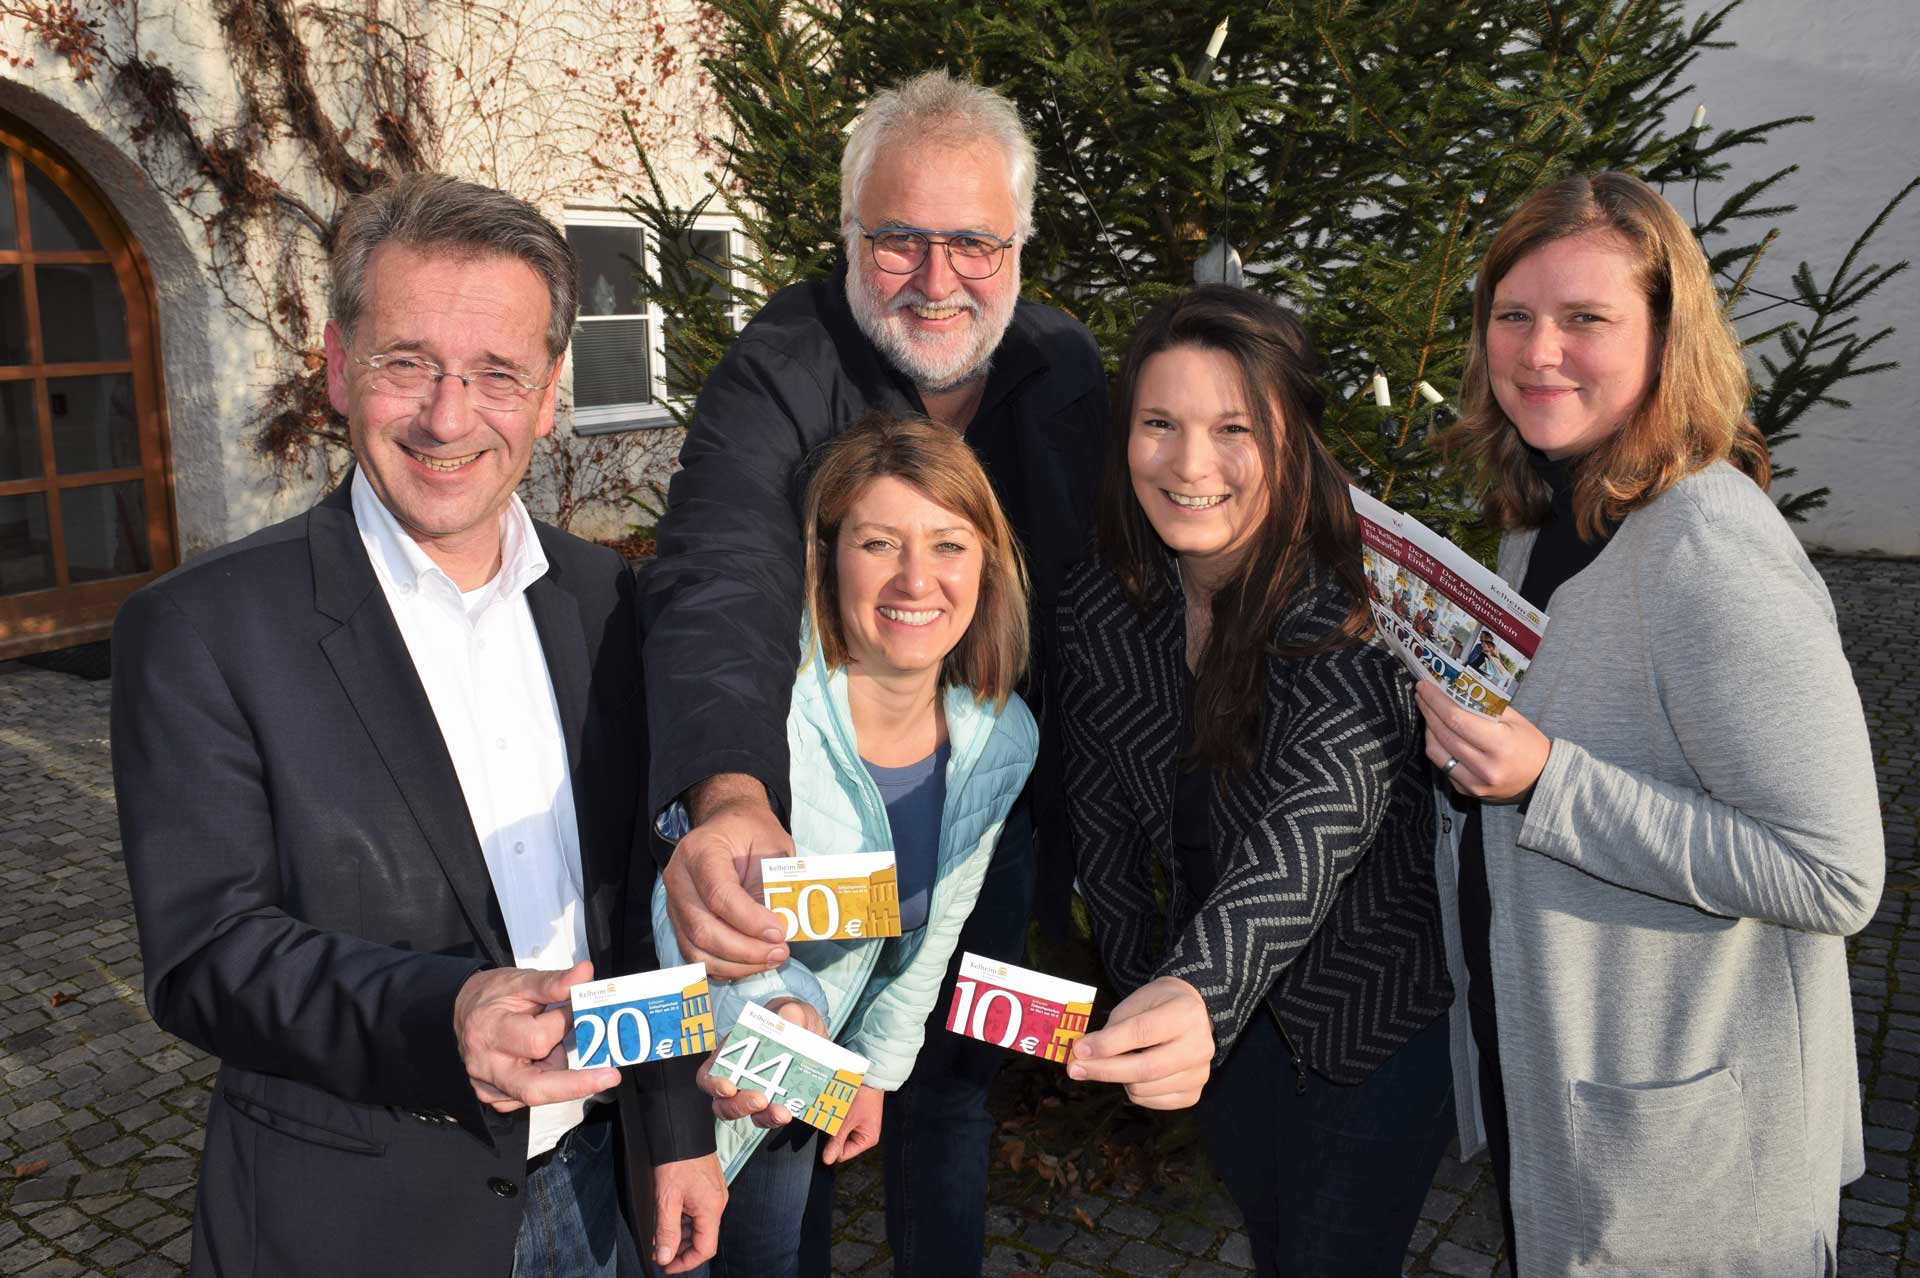 Bürgermeister Horst Hartmann, Bernd Lotter, Barbara Wieben, Lena Plapperer und Stefanie Brixner präsentieren den neuen K€lheimer. (Foto: Kandziora)